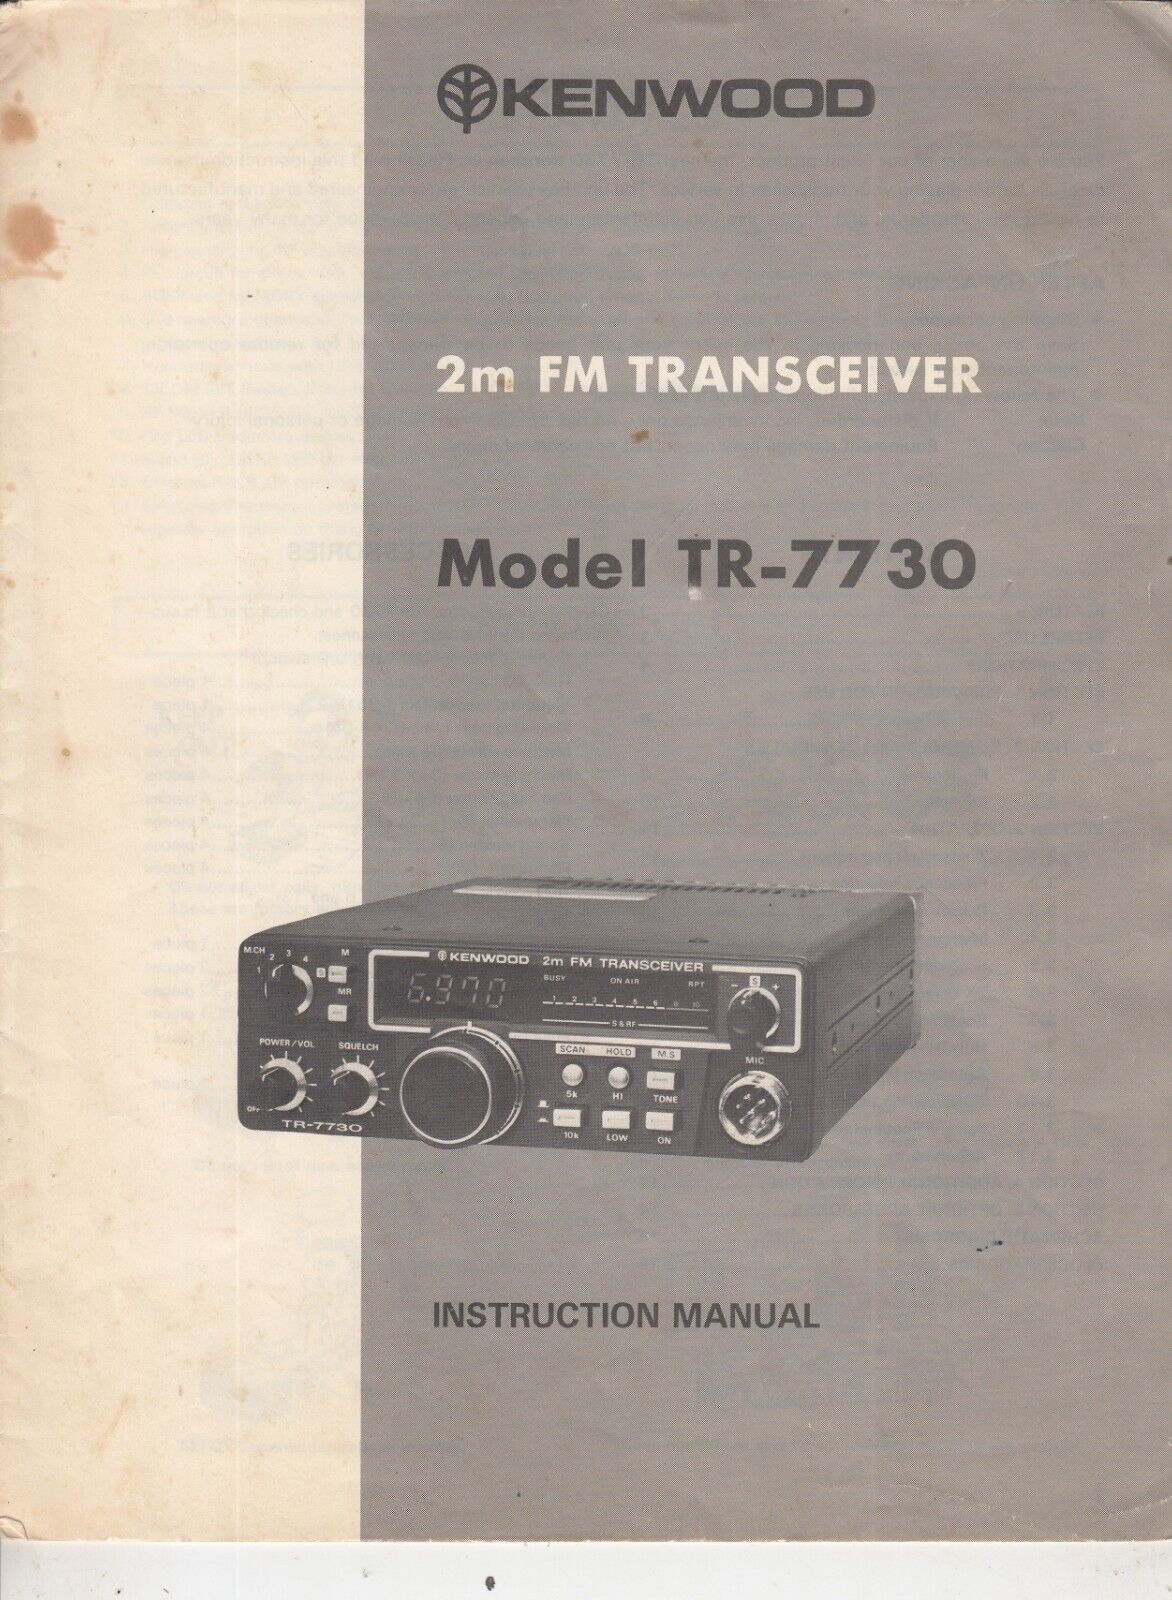 *GENUINE ORIGINAL KENWOOD TR-7730 2 METER FM TRANSCEIVER INSTRUCTION MANUAL*